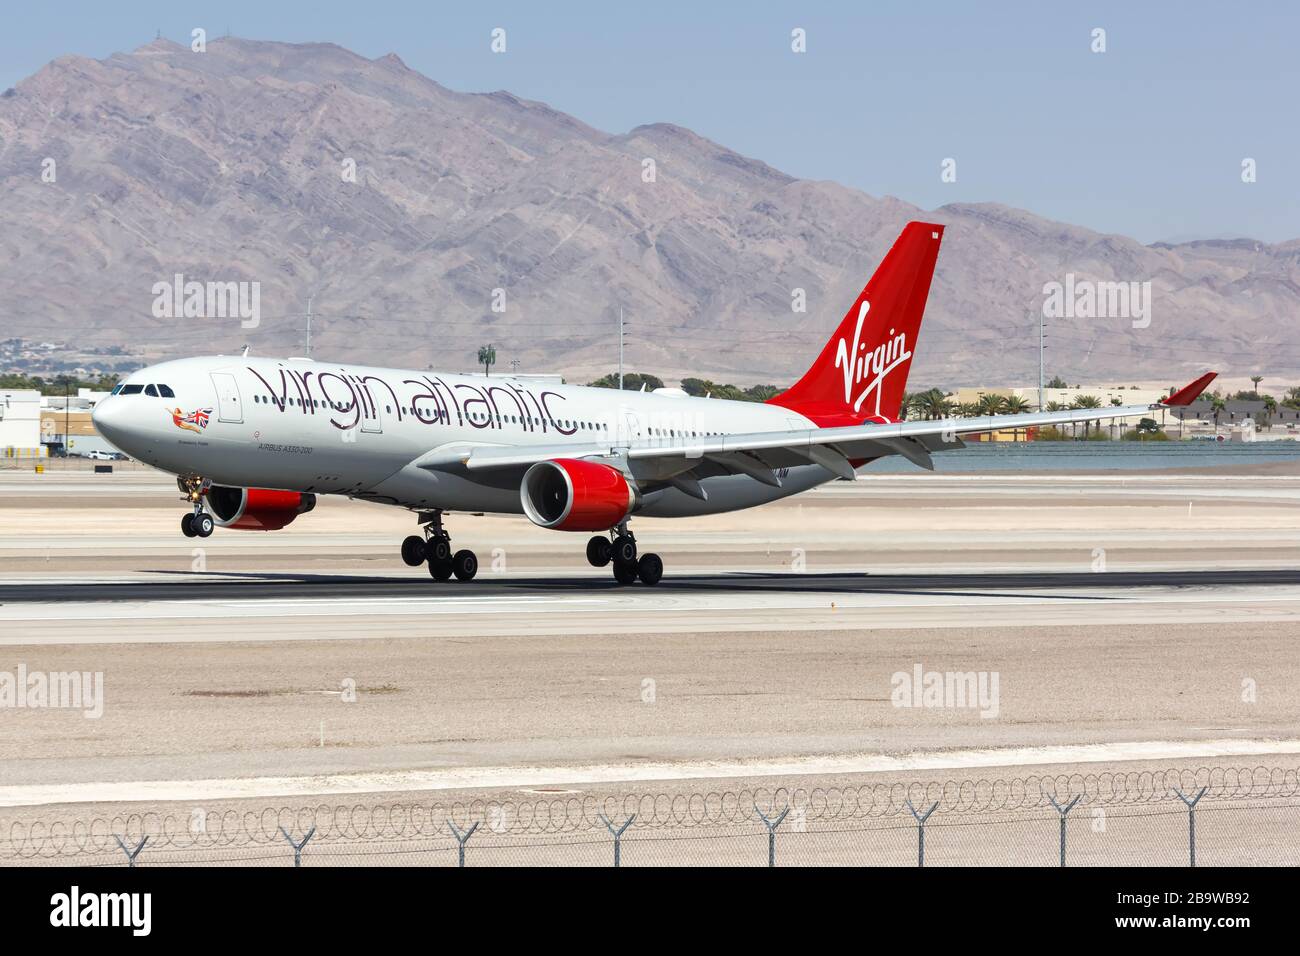 Las Vegas, Nevada – 9 avril 2019 : avion Airbus A330-200 de Virgin Atlantic Airways à l'aéroport de Las Vegas (LAS) au Nevada. Airbus est une compagnie aérienne européenne Banque D'Images